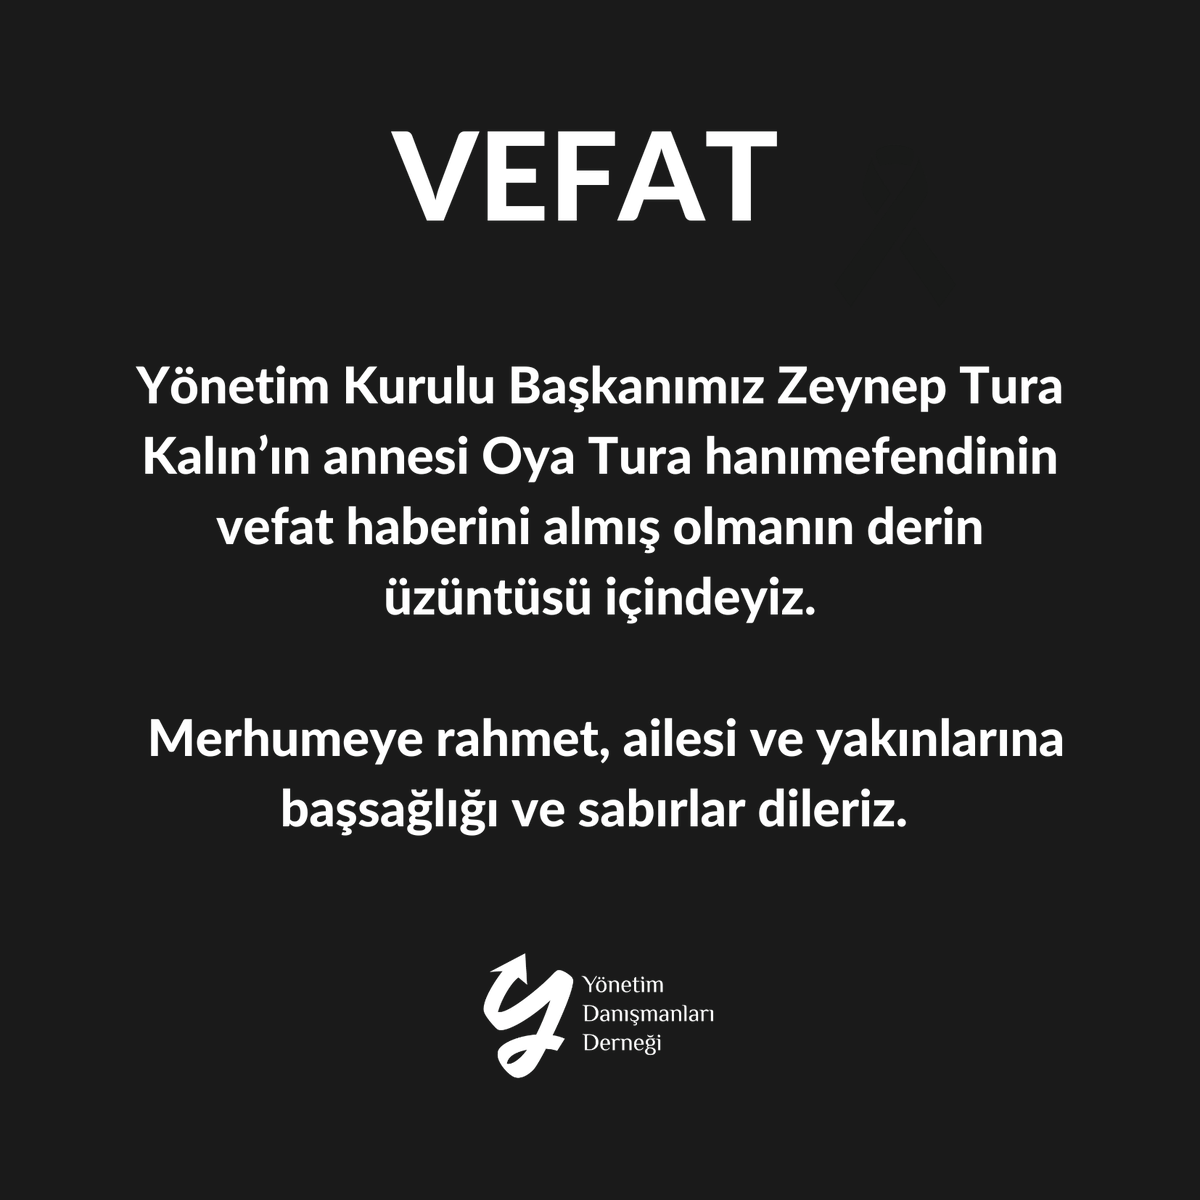 Merhume 8 Şubat Perşembe günü Erenköy Galip Paşa Camiinde kılınacak ikindi namazını müteakip Şile Çayırbaşı mezarlığında son yolculuğuna uğurlanacaktır. #VEFAT #YönetimDanışmanlarıDerneği